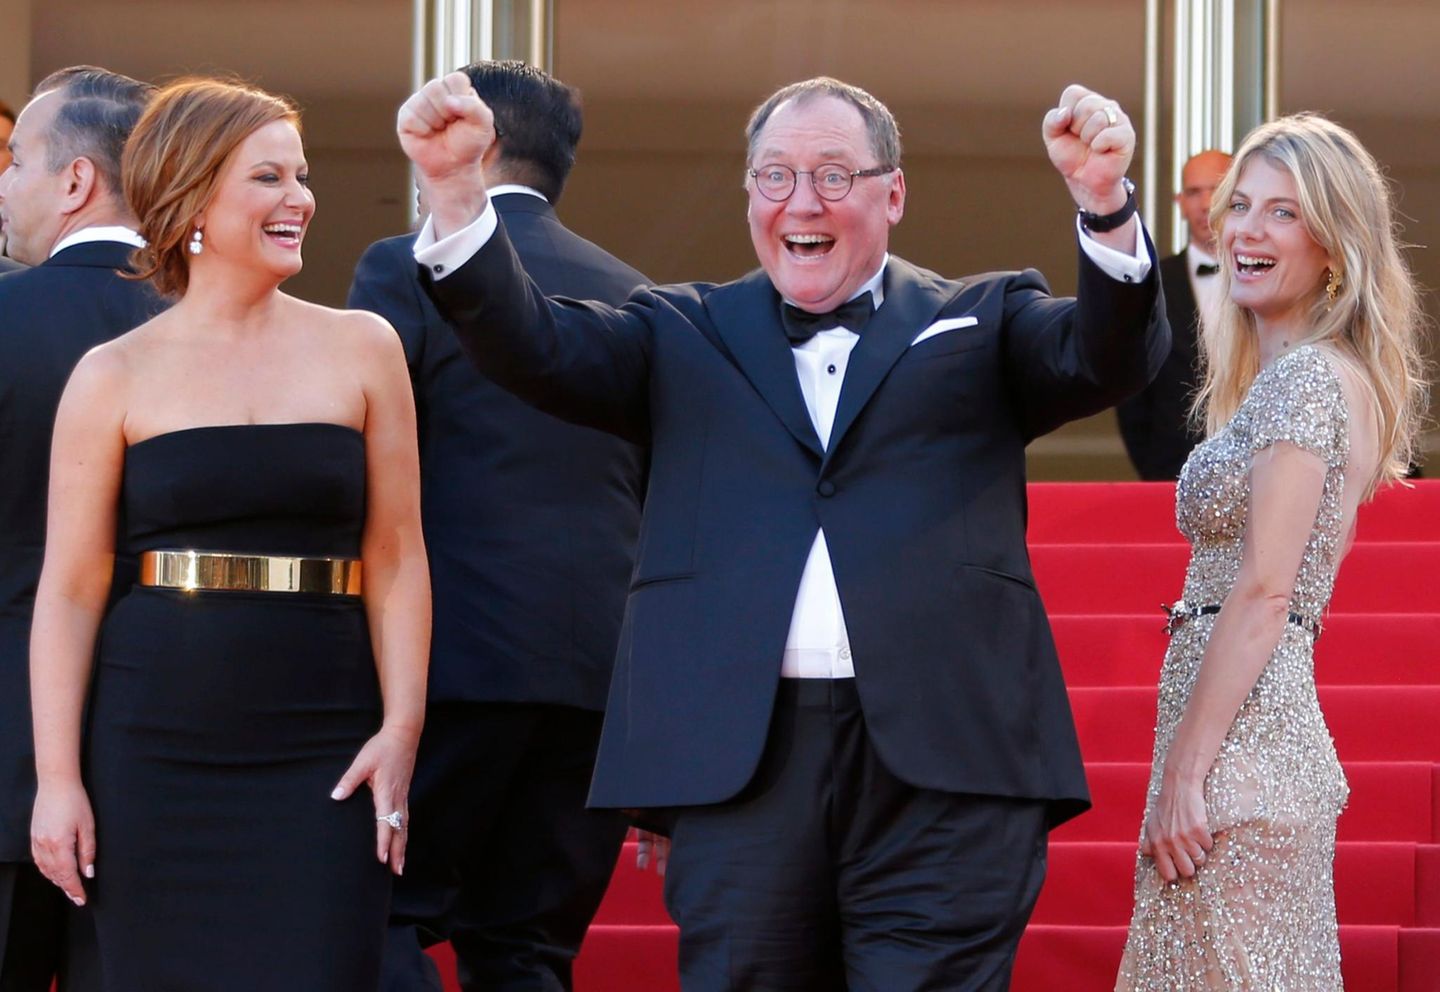 Produzent John Lasseter und die Synchronstimmen des Films Amy Poehler und Melanie Laurent feiern ihren Film "Inside Out".